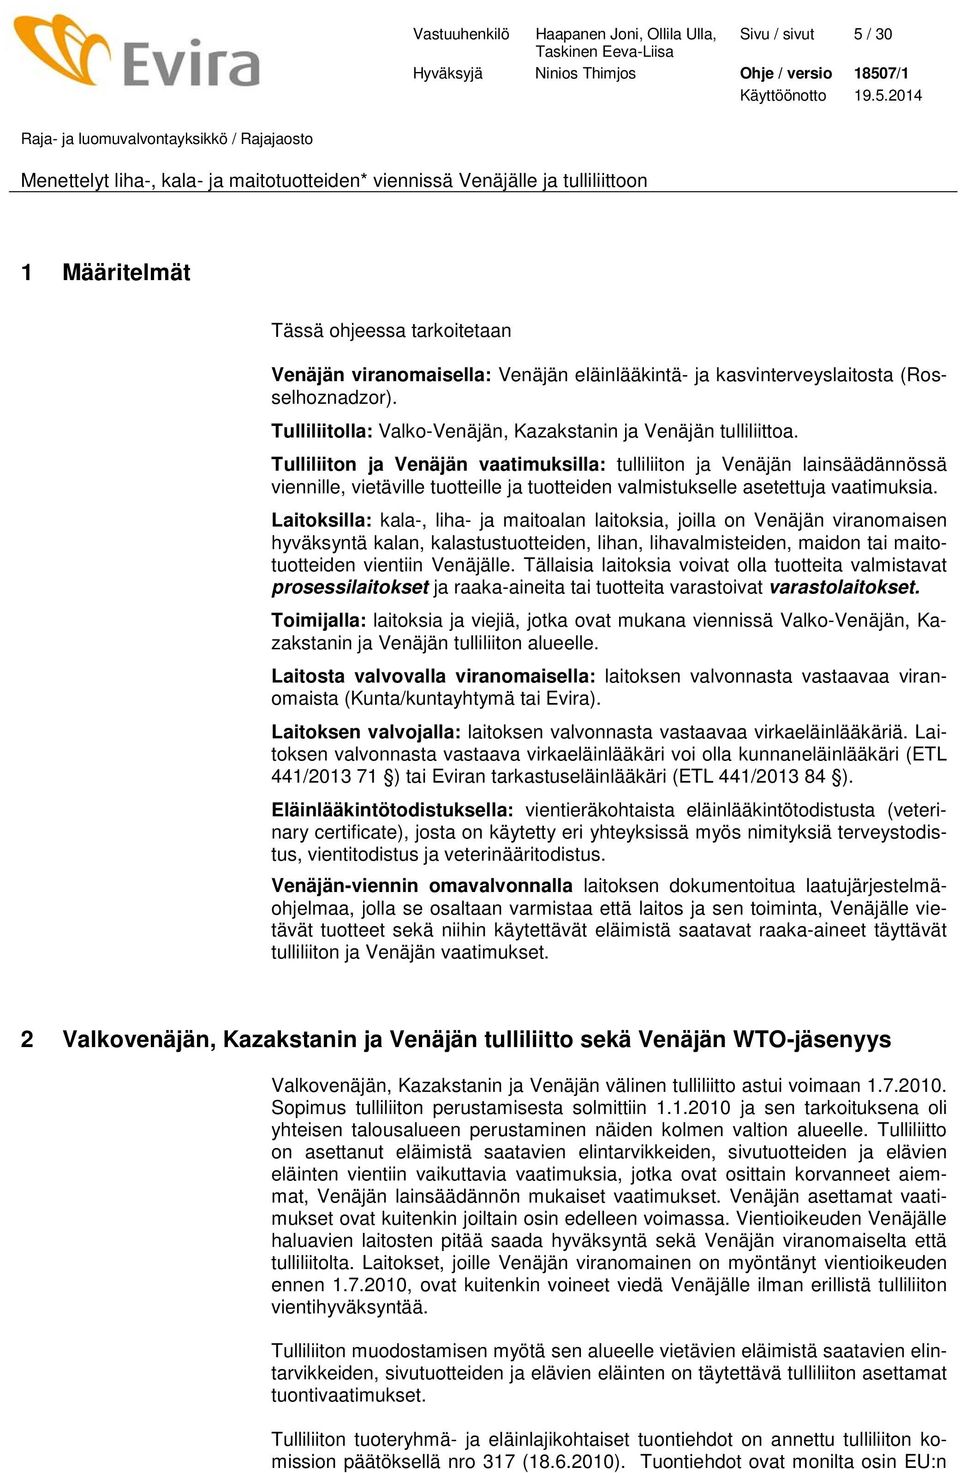 Tulliliiton ja Venäjän vaatimuksilla: tulliliiton ja Venäjän lainsäädännössä viennille, vietäville tuotteille ja tuotteiden valmistukselle asetettuja vaatimuksia.